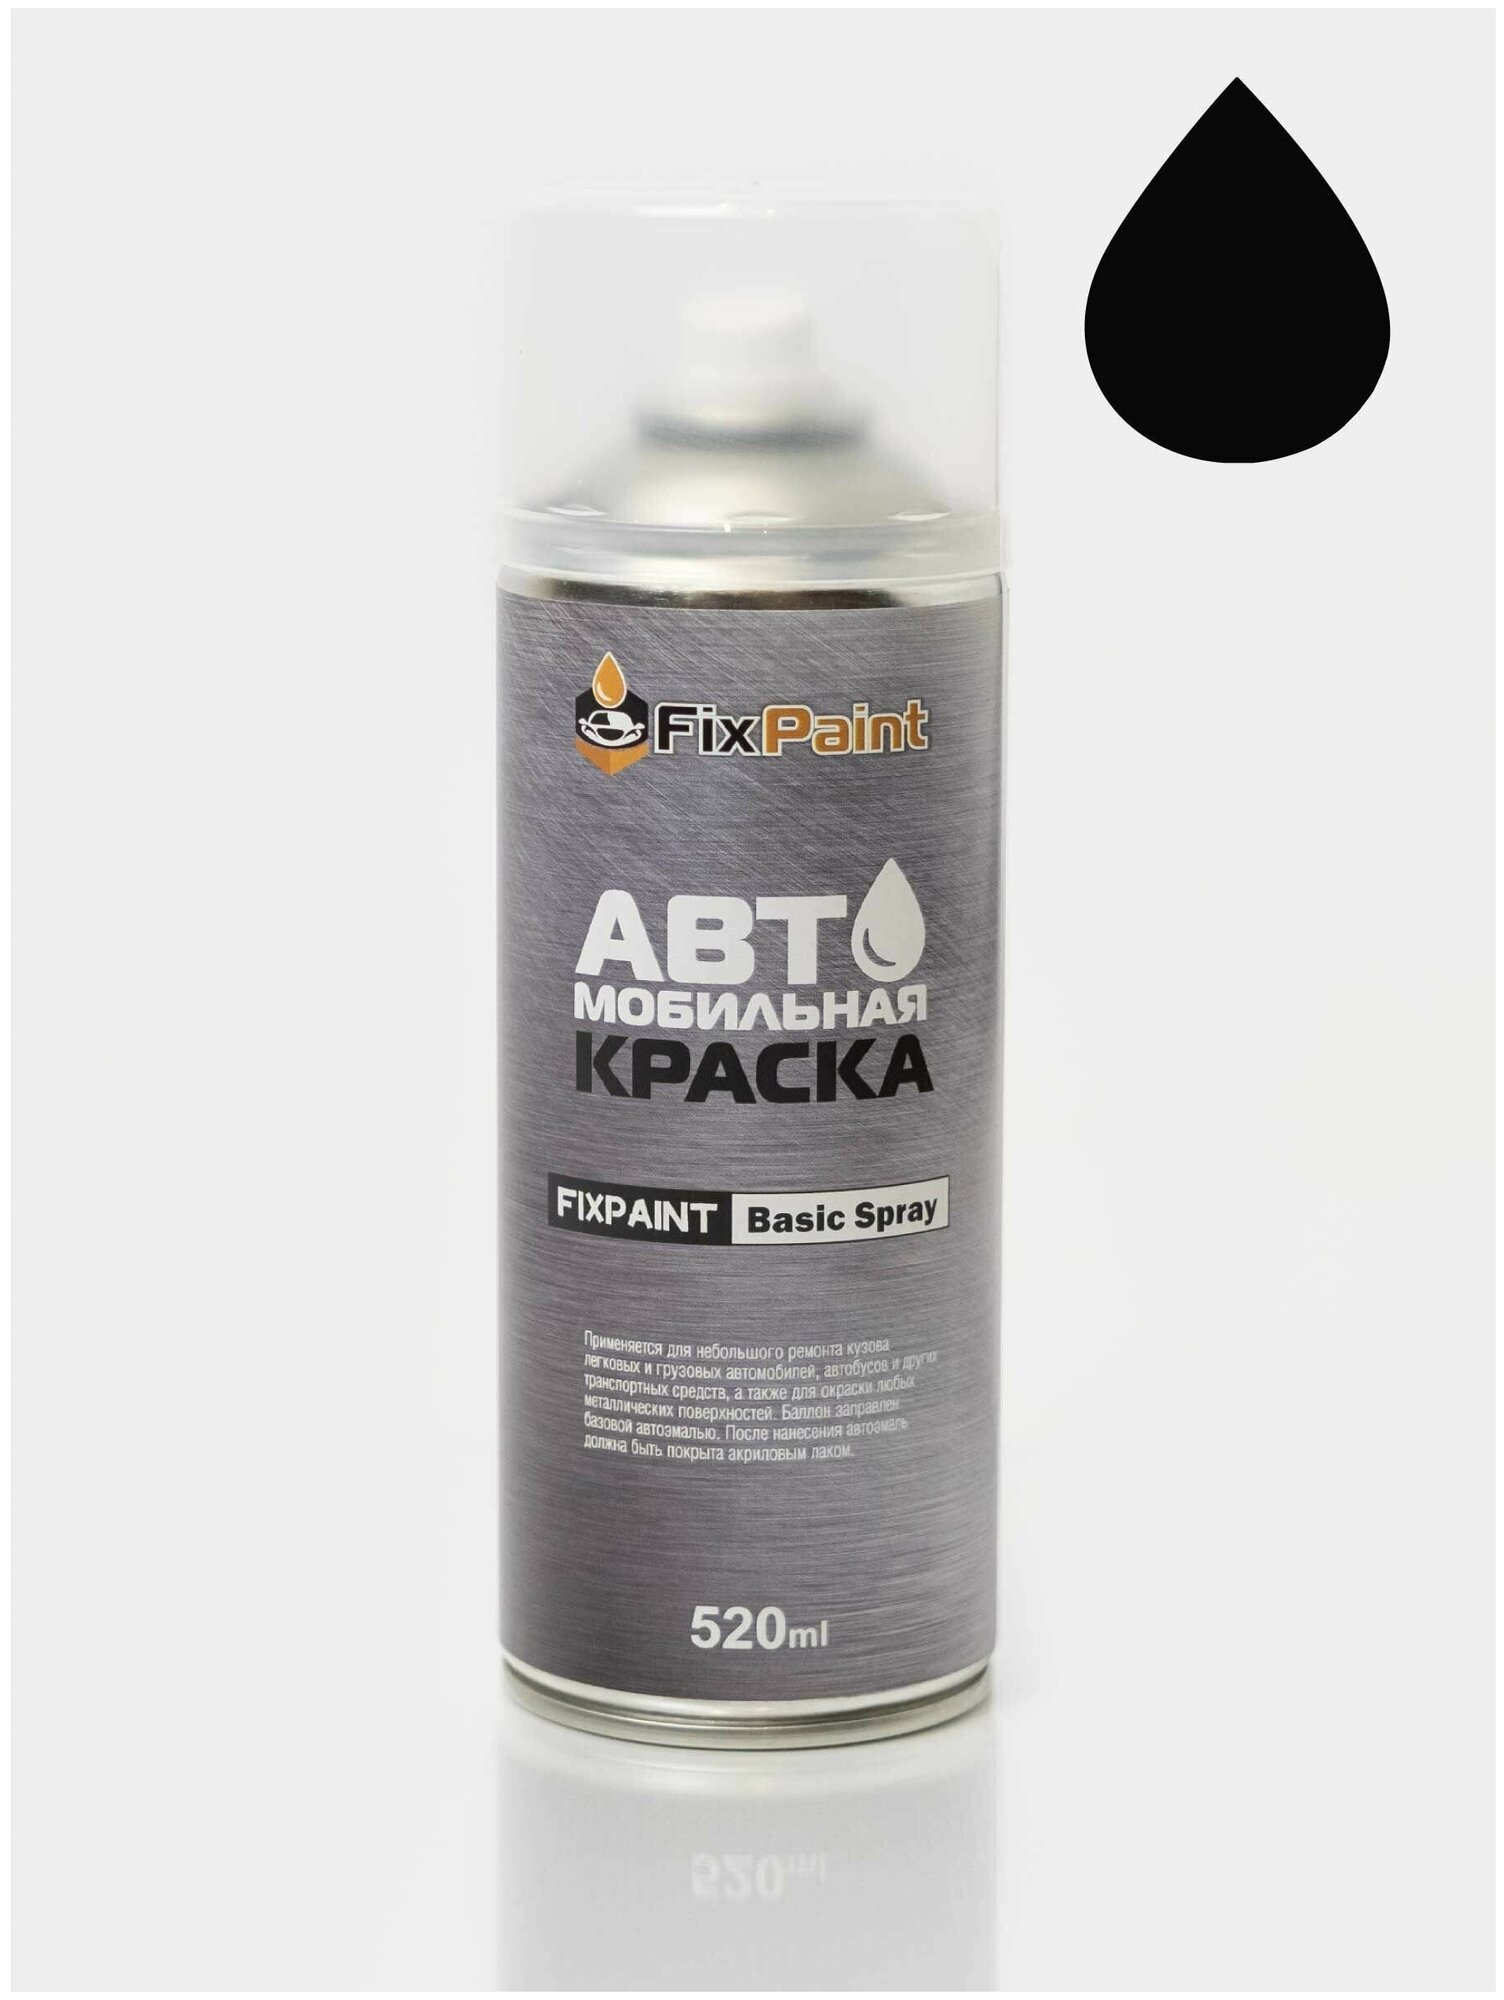 Автомобильная краска FixPaint Spray KIA SPECTRA, код цвета EB, название черный солид, в аэрозольном баллончике 520 мл